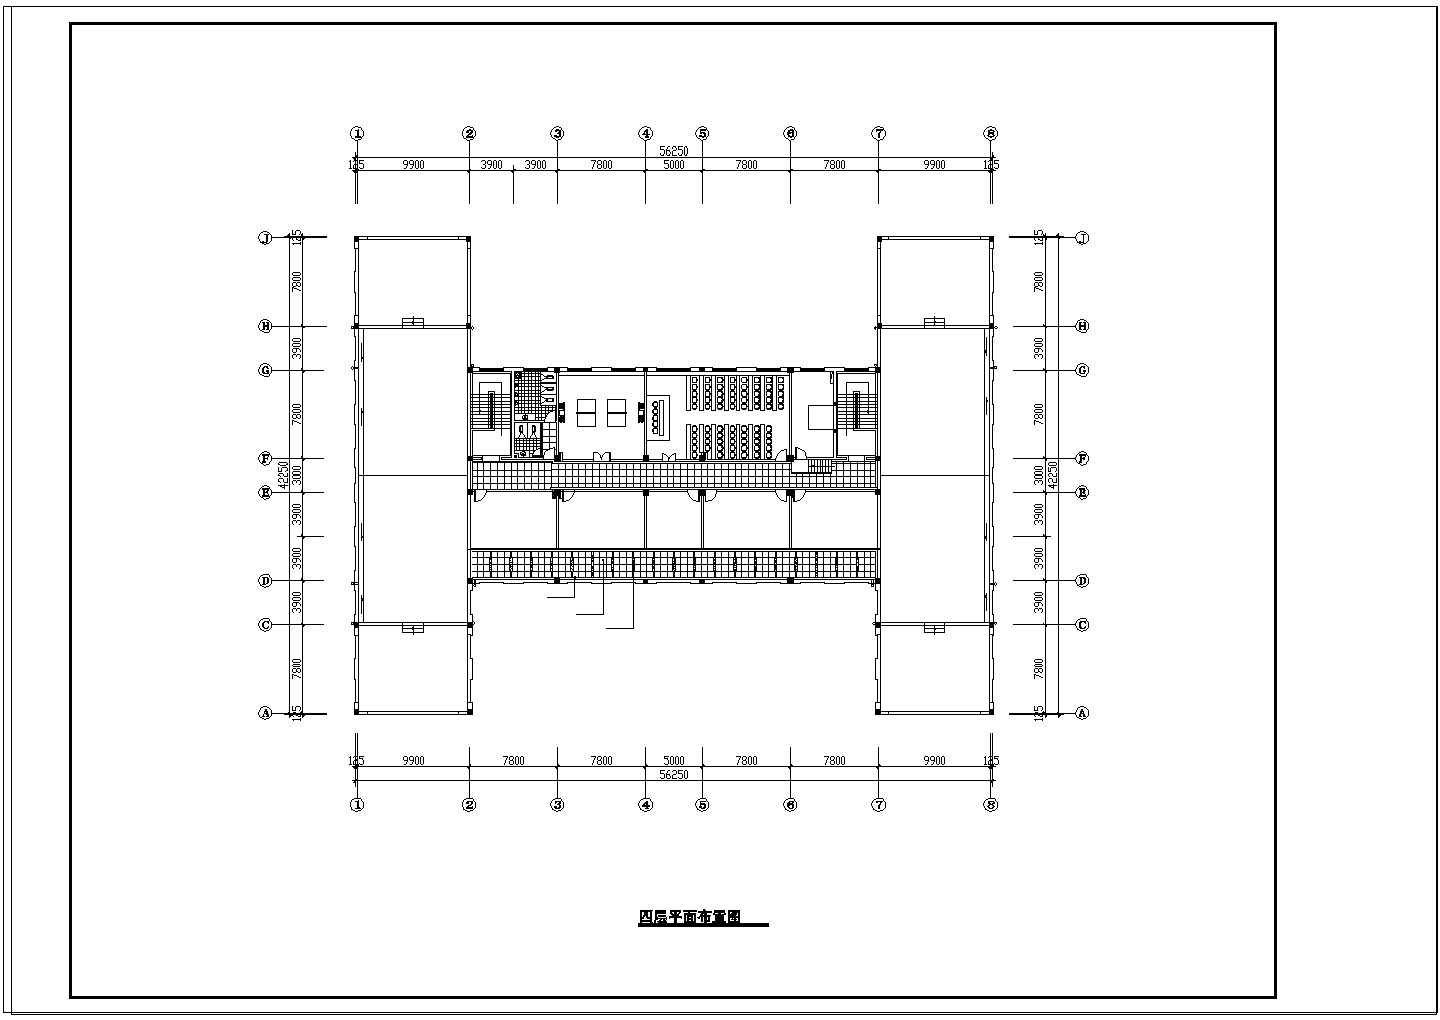 某医院工装cad施工图-可参考用于建筑设计